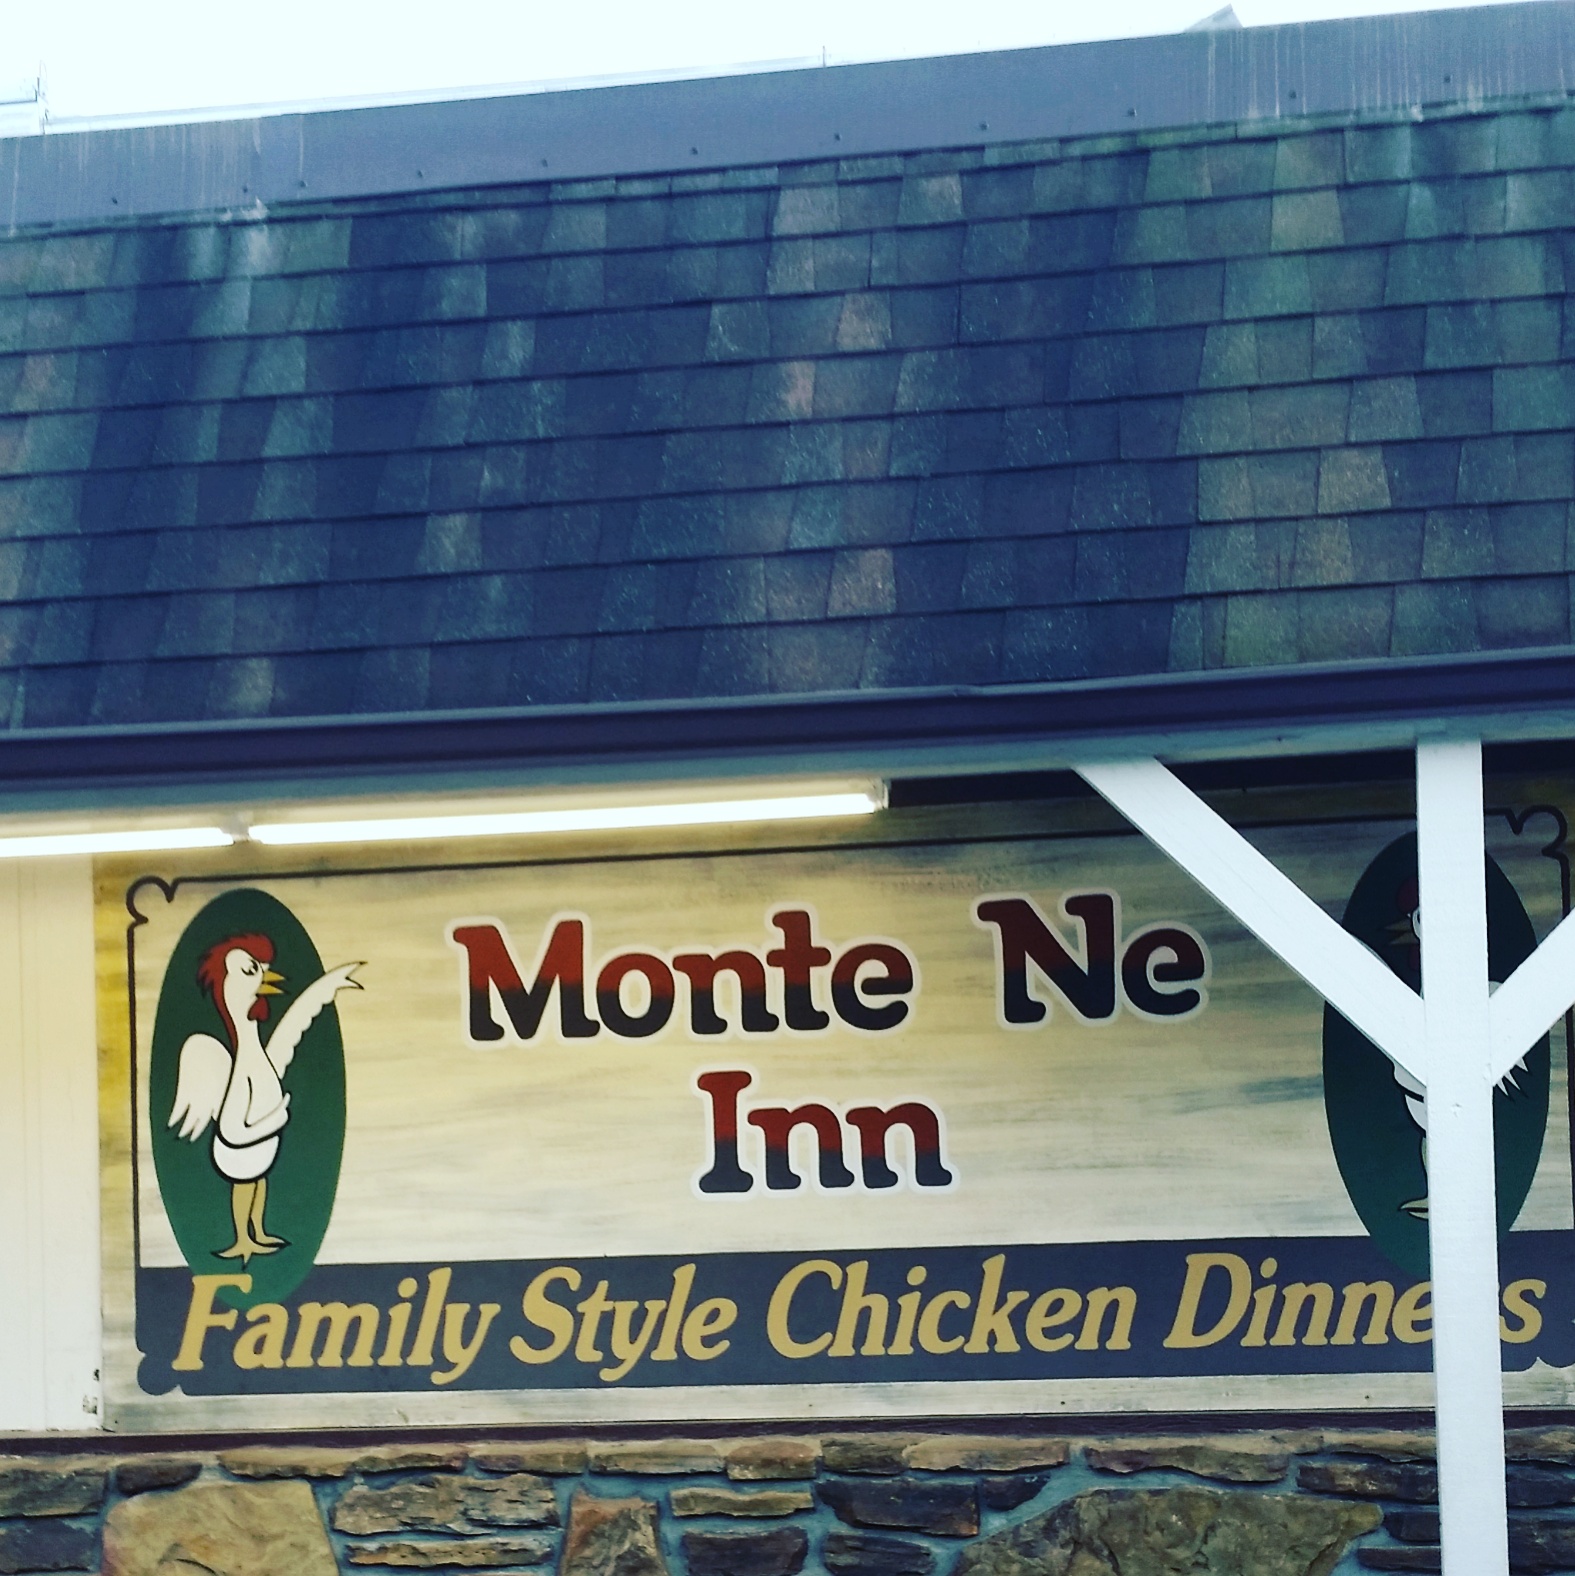 Monte Ne Inn Chicken